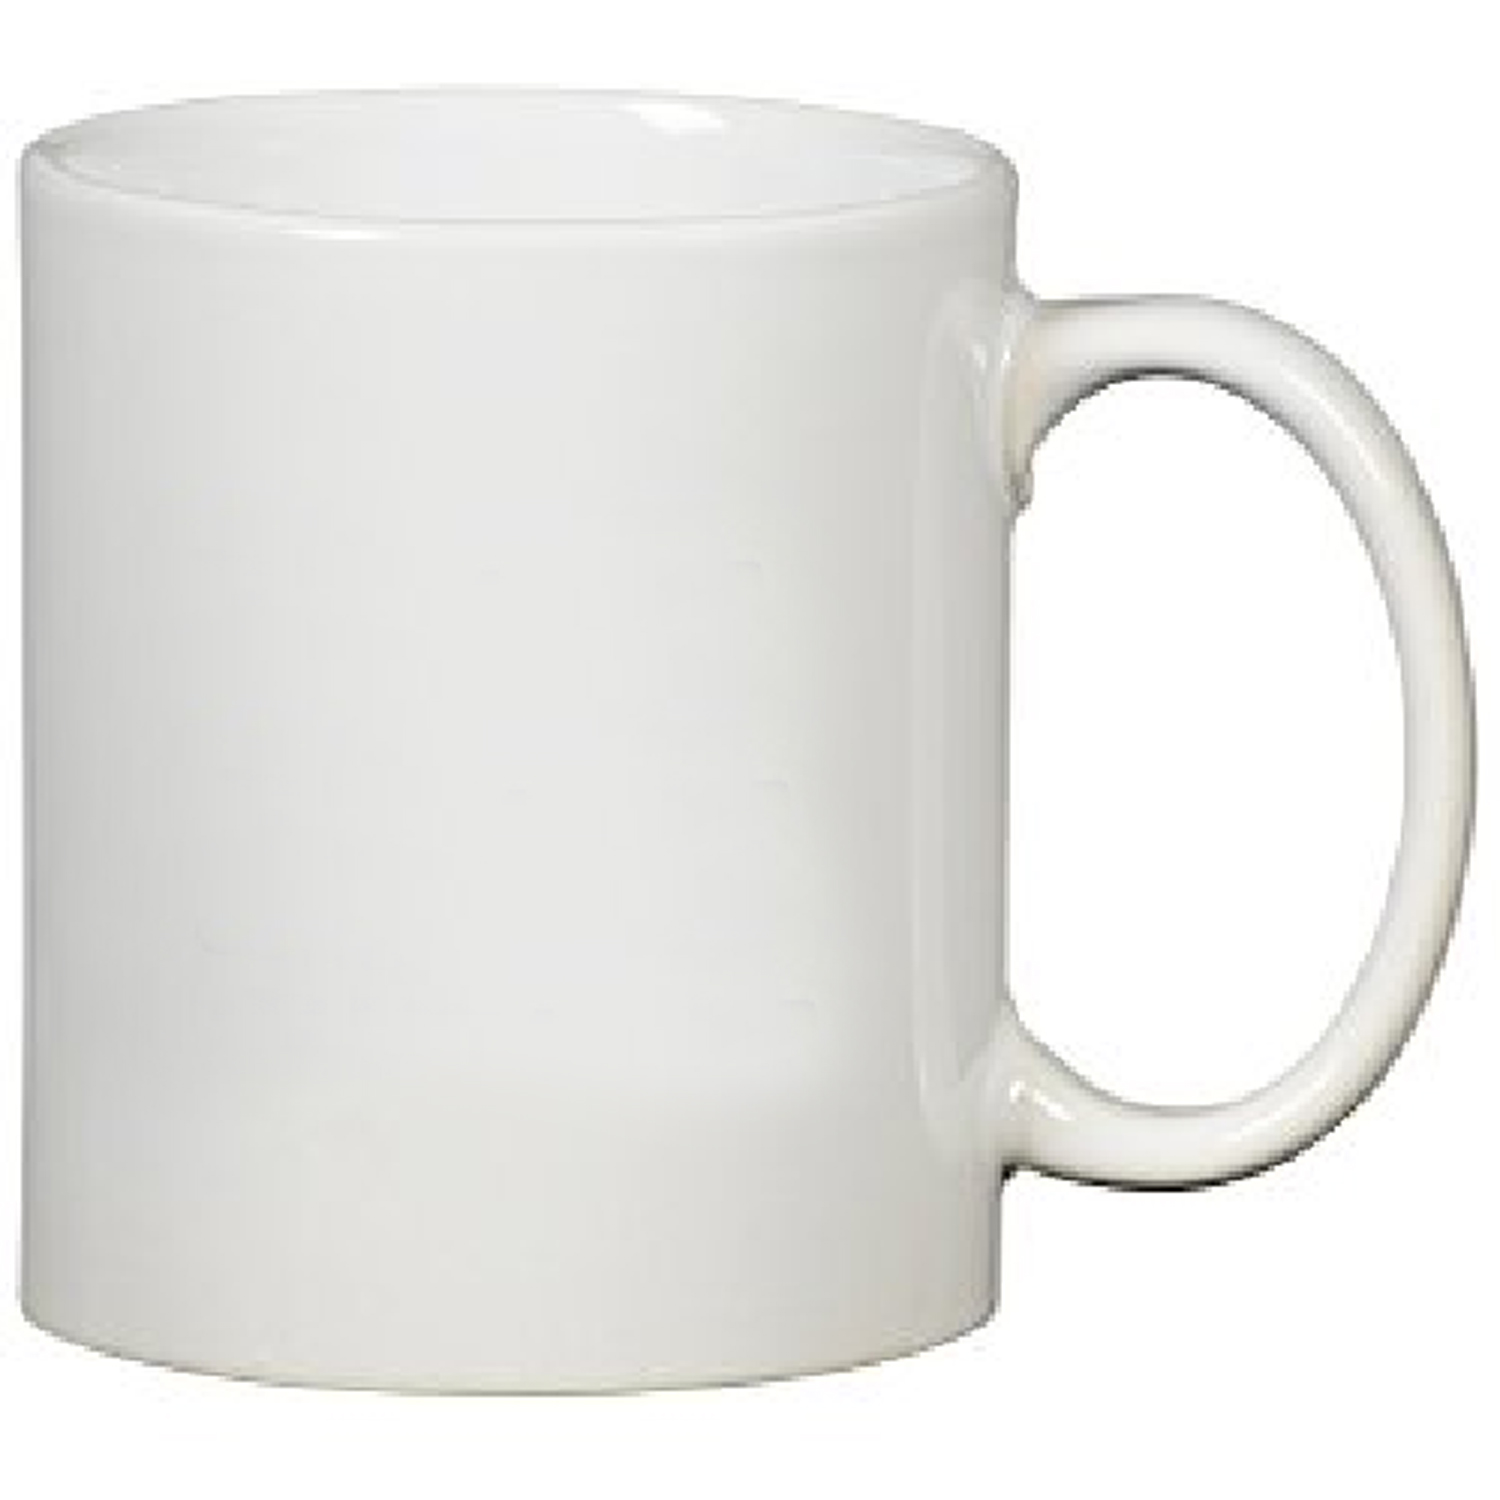 Traditional Ceramic Coffee Mug (11 Oz., 3.15 x 3.75)